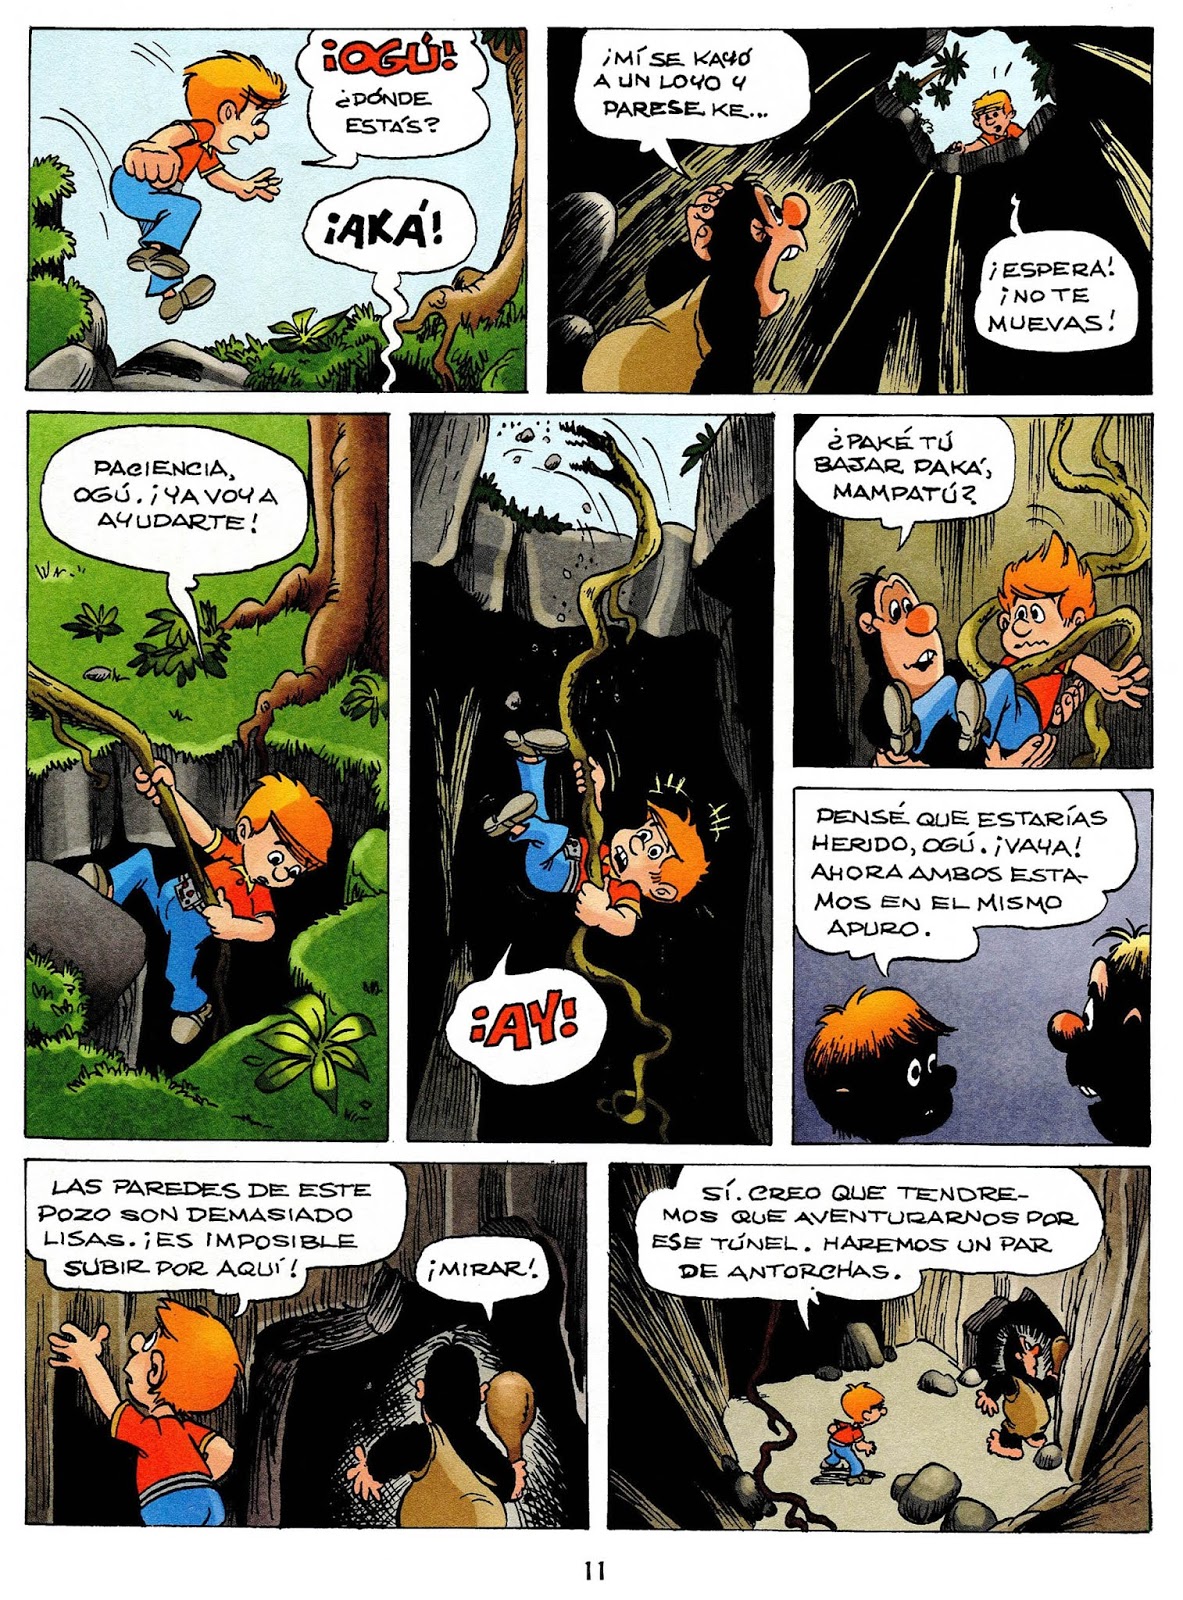 Leer Comics: Las aventuras de Ogú - Mampato y Rena 30 - Fitus Sapiens1183 x 1600